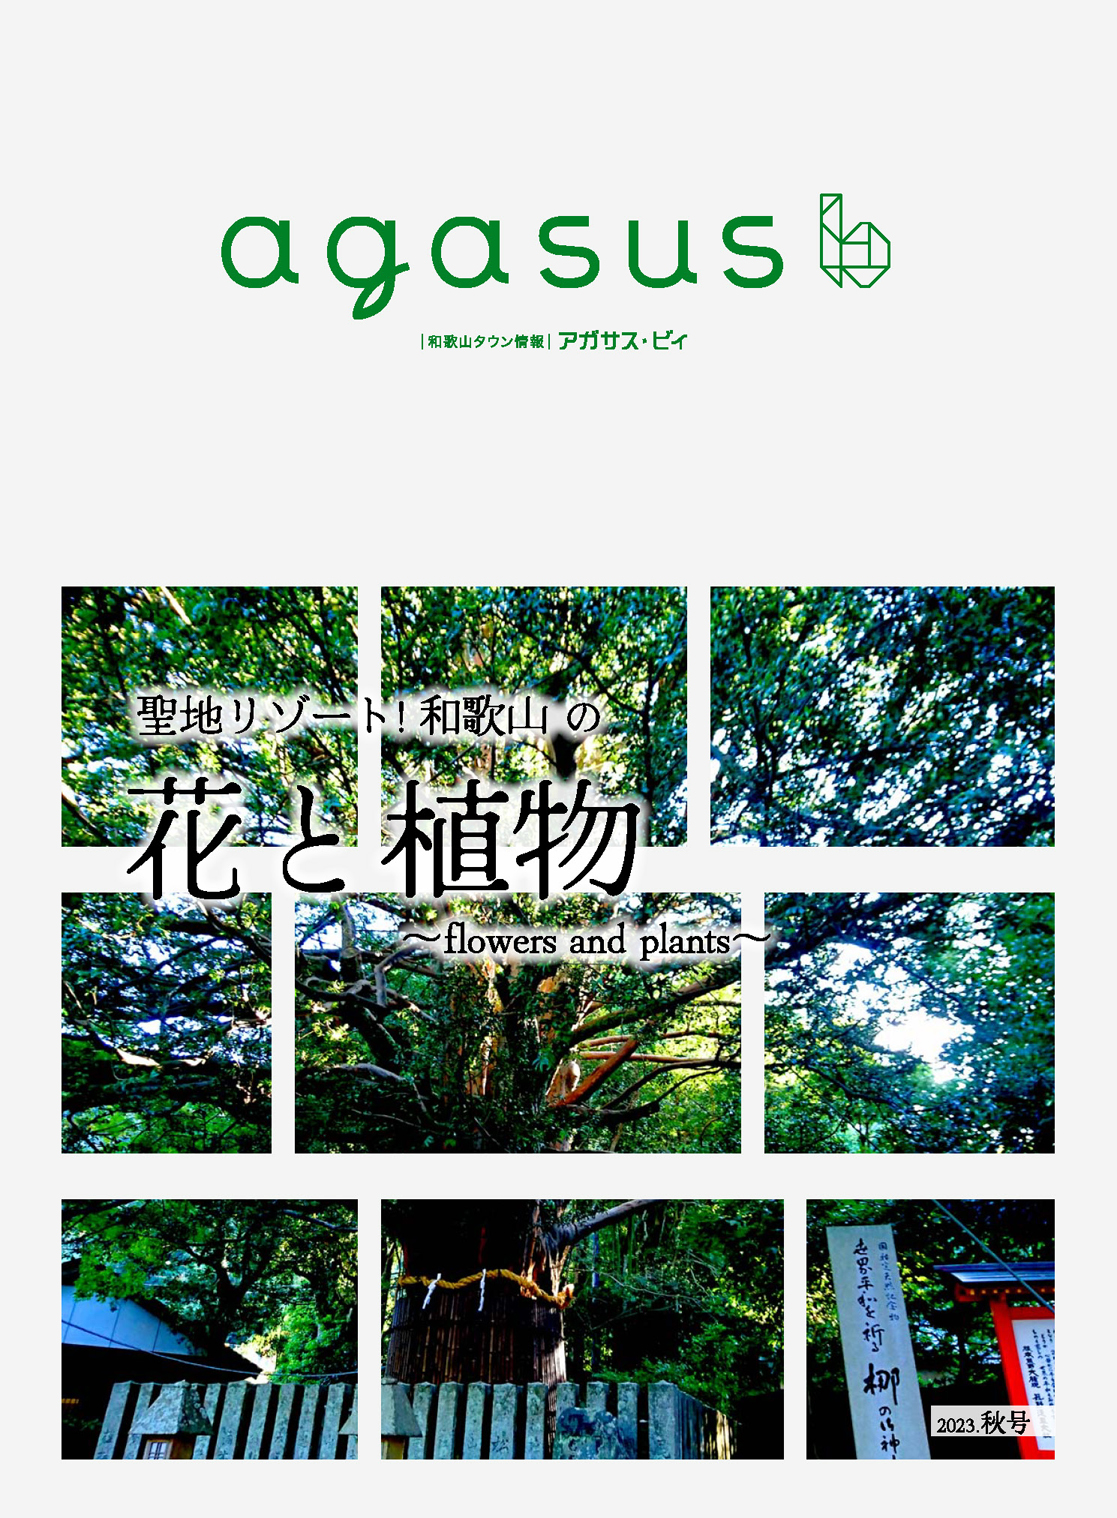 和歌山タウン情報アガサス・ビィ2023年秋号を公開しました！